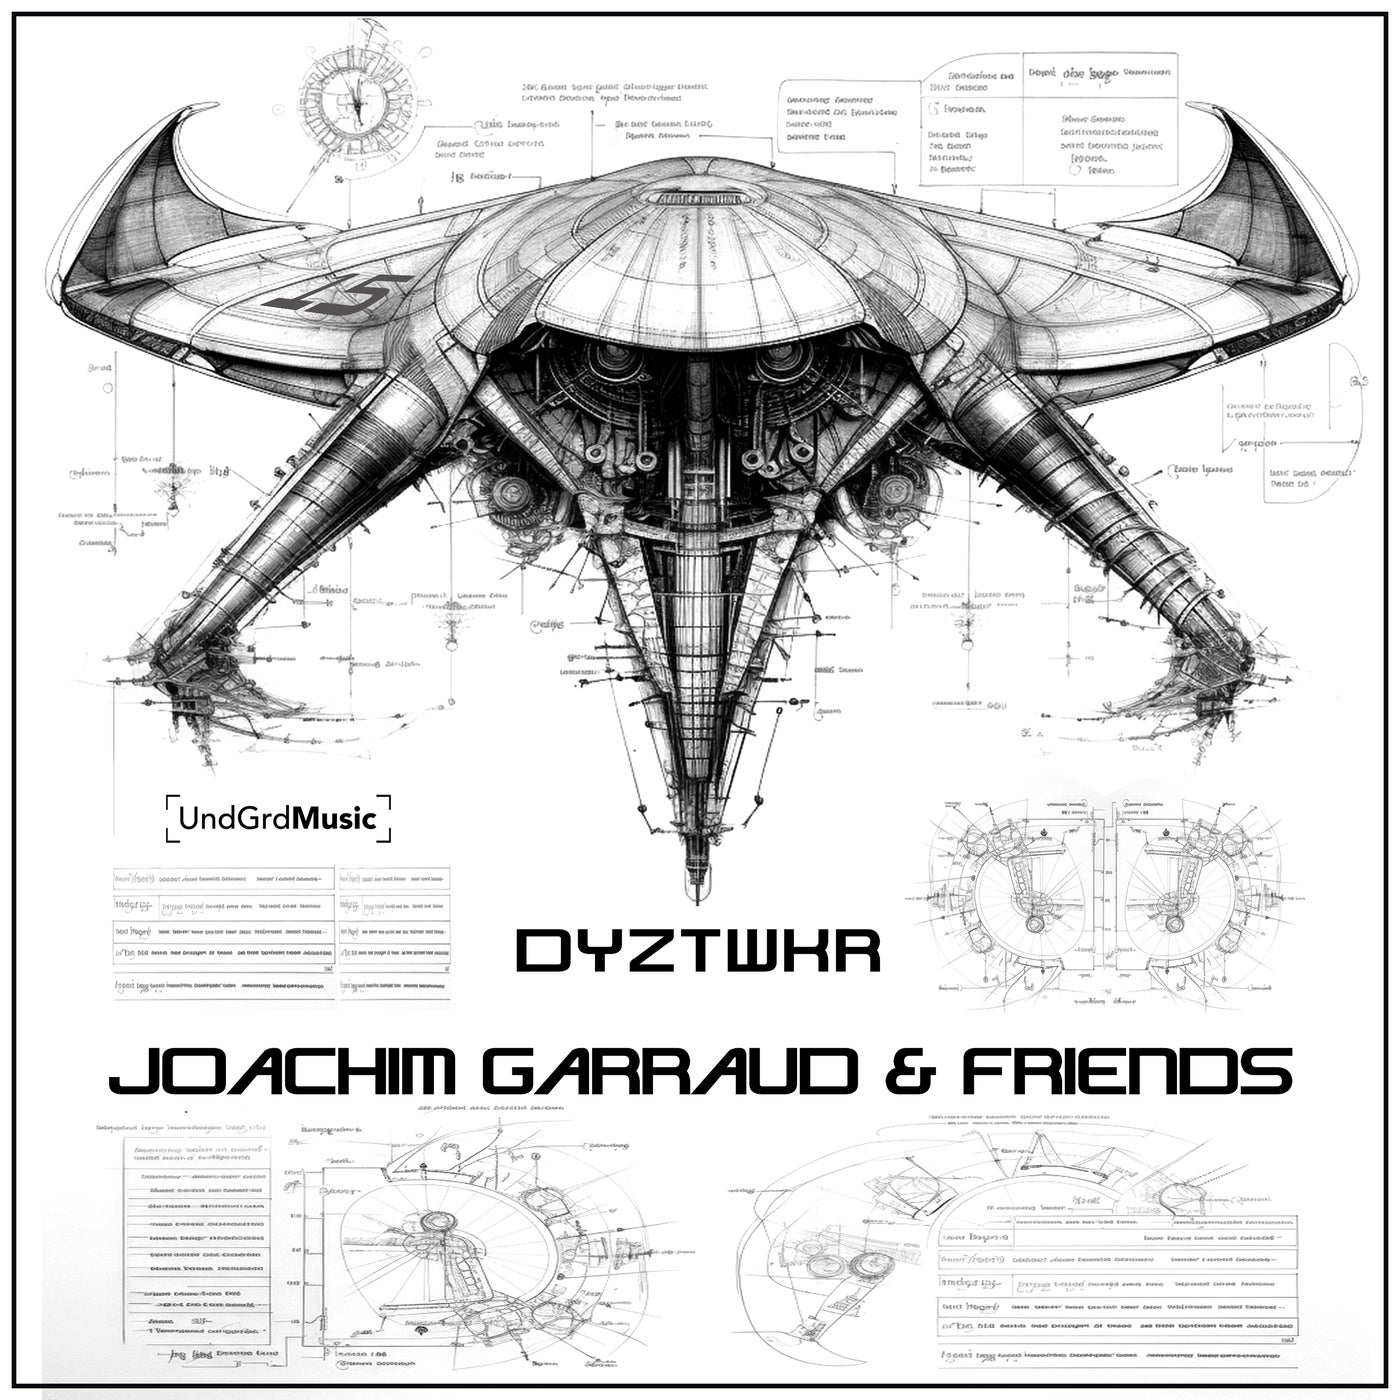 Joachim Garraud & Friends - DYZTWKR